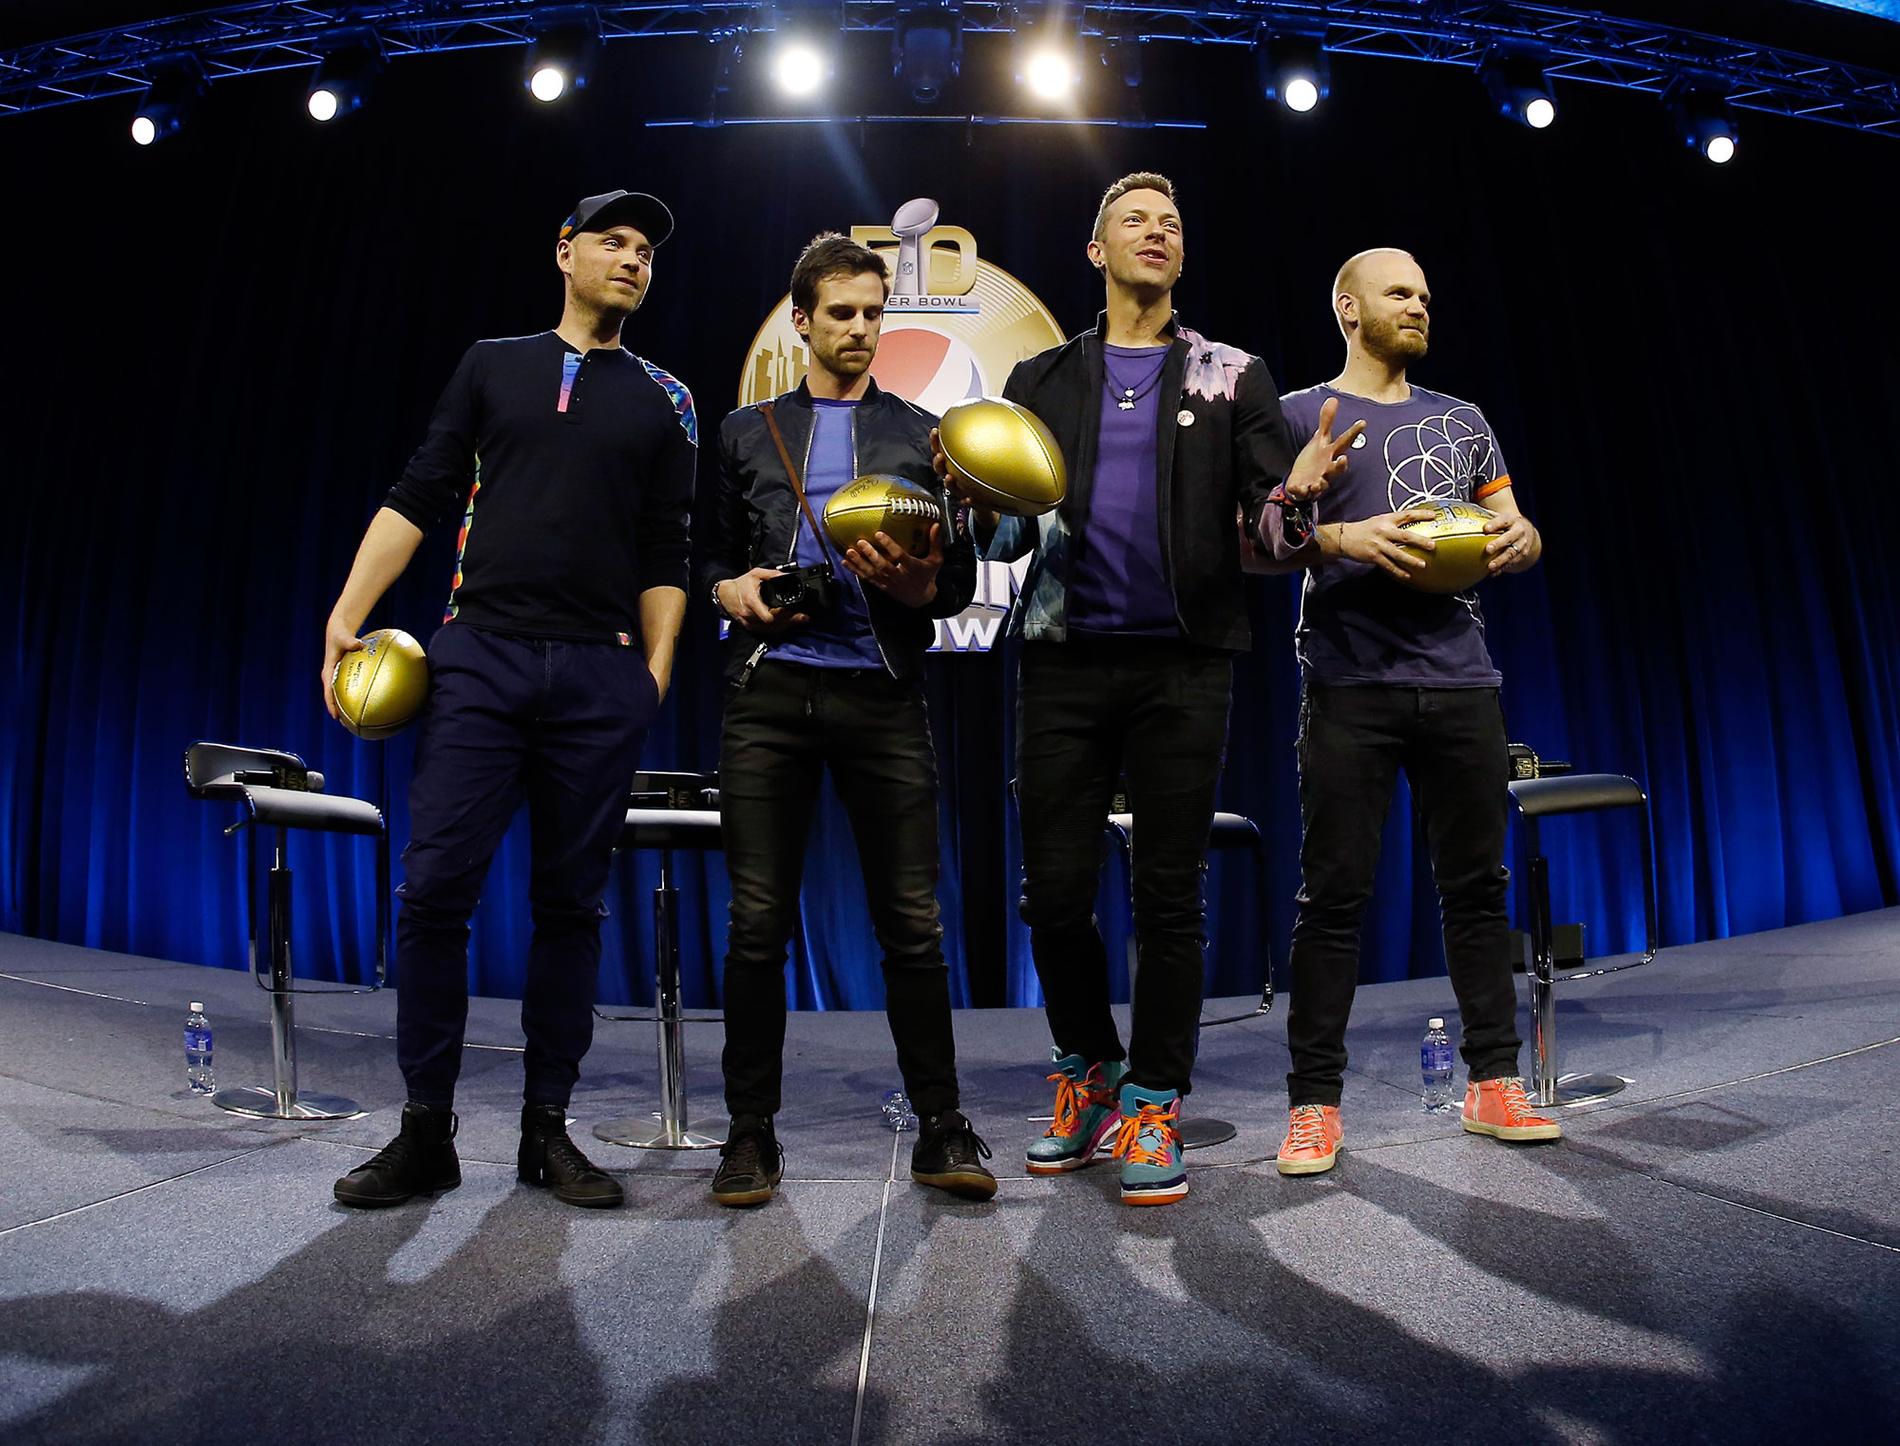 Coldplay inför spelningen på amerikansk fotbollsfinalen Super bowl 2016. Från vänster Jonny Buckland, Guy Berryman, Chris Martin och Will Champion.